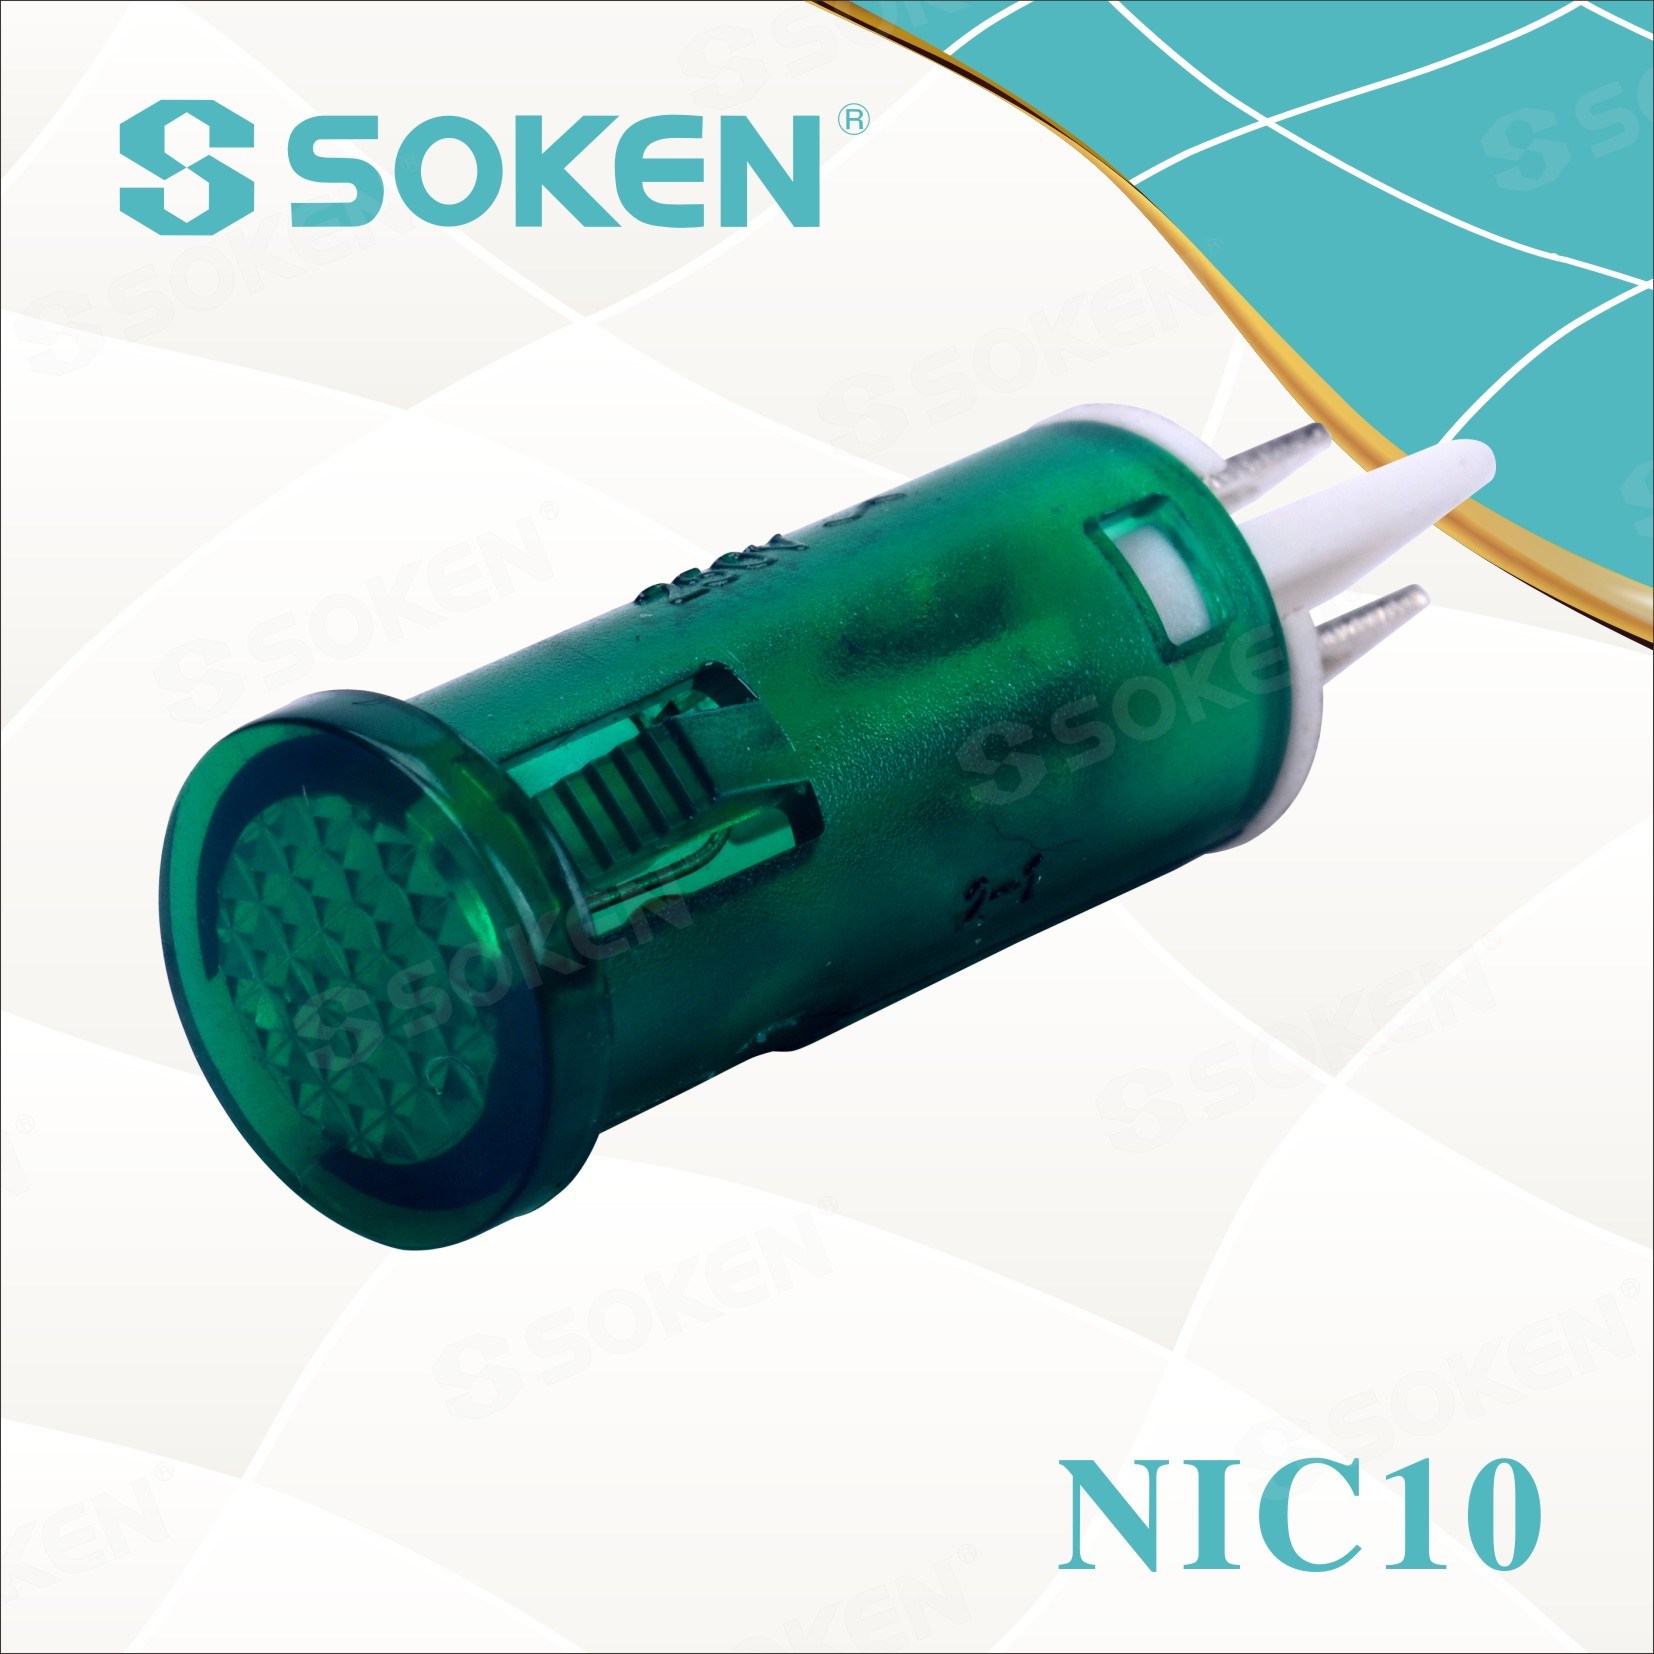 Soken Nic10 Indicator Light na may Neon Lamp